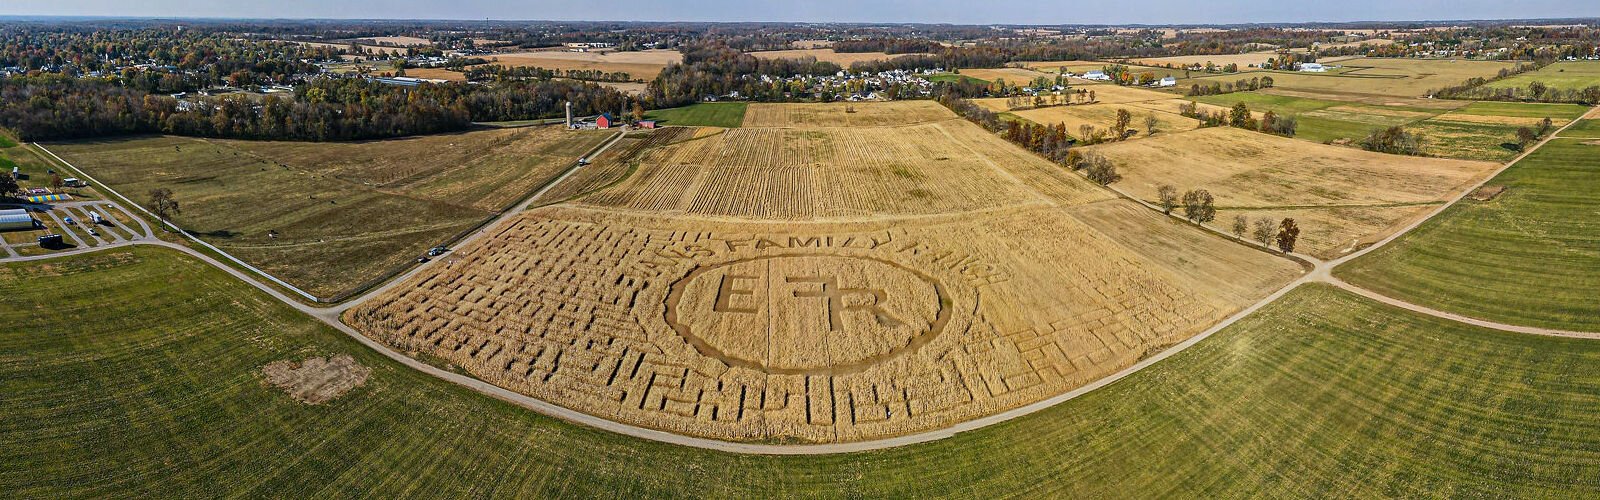 Evans Family Ranch corn maze.